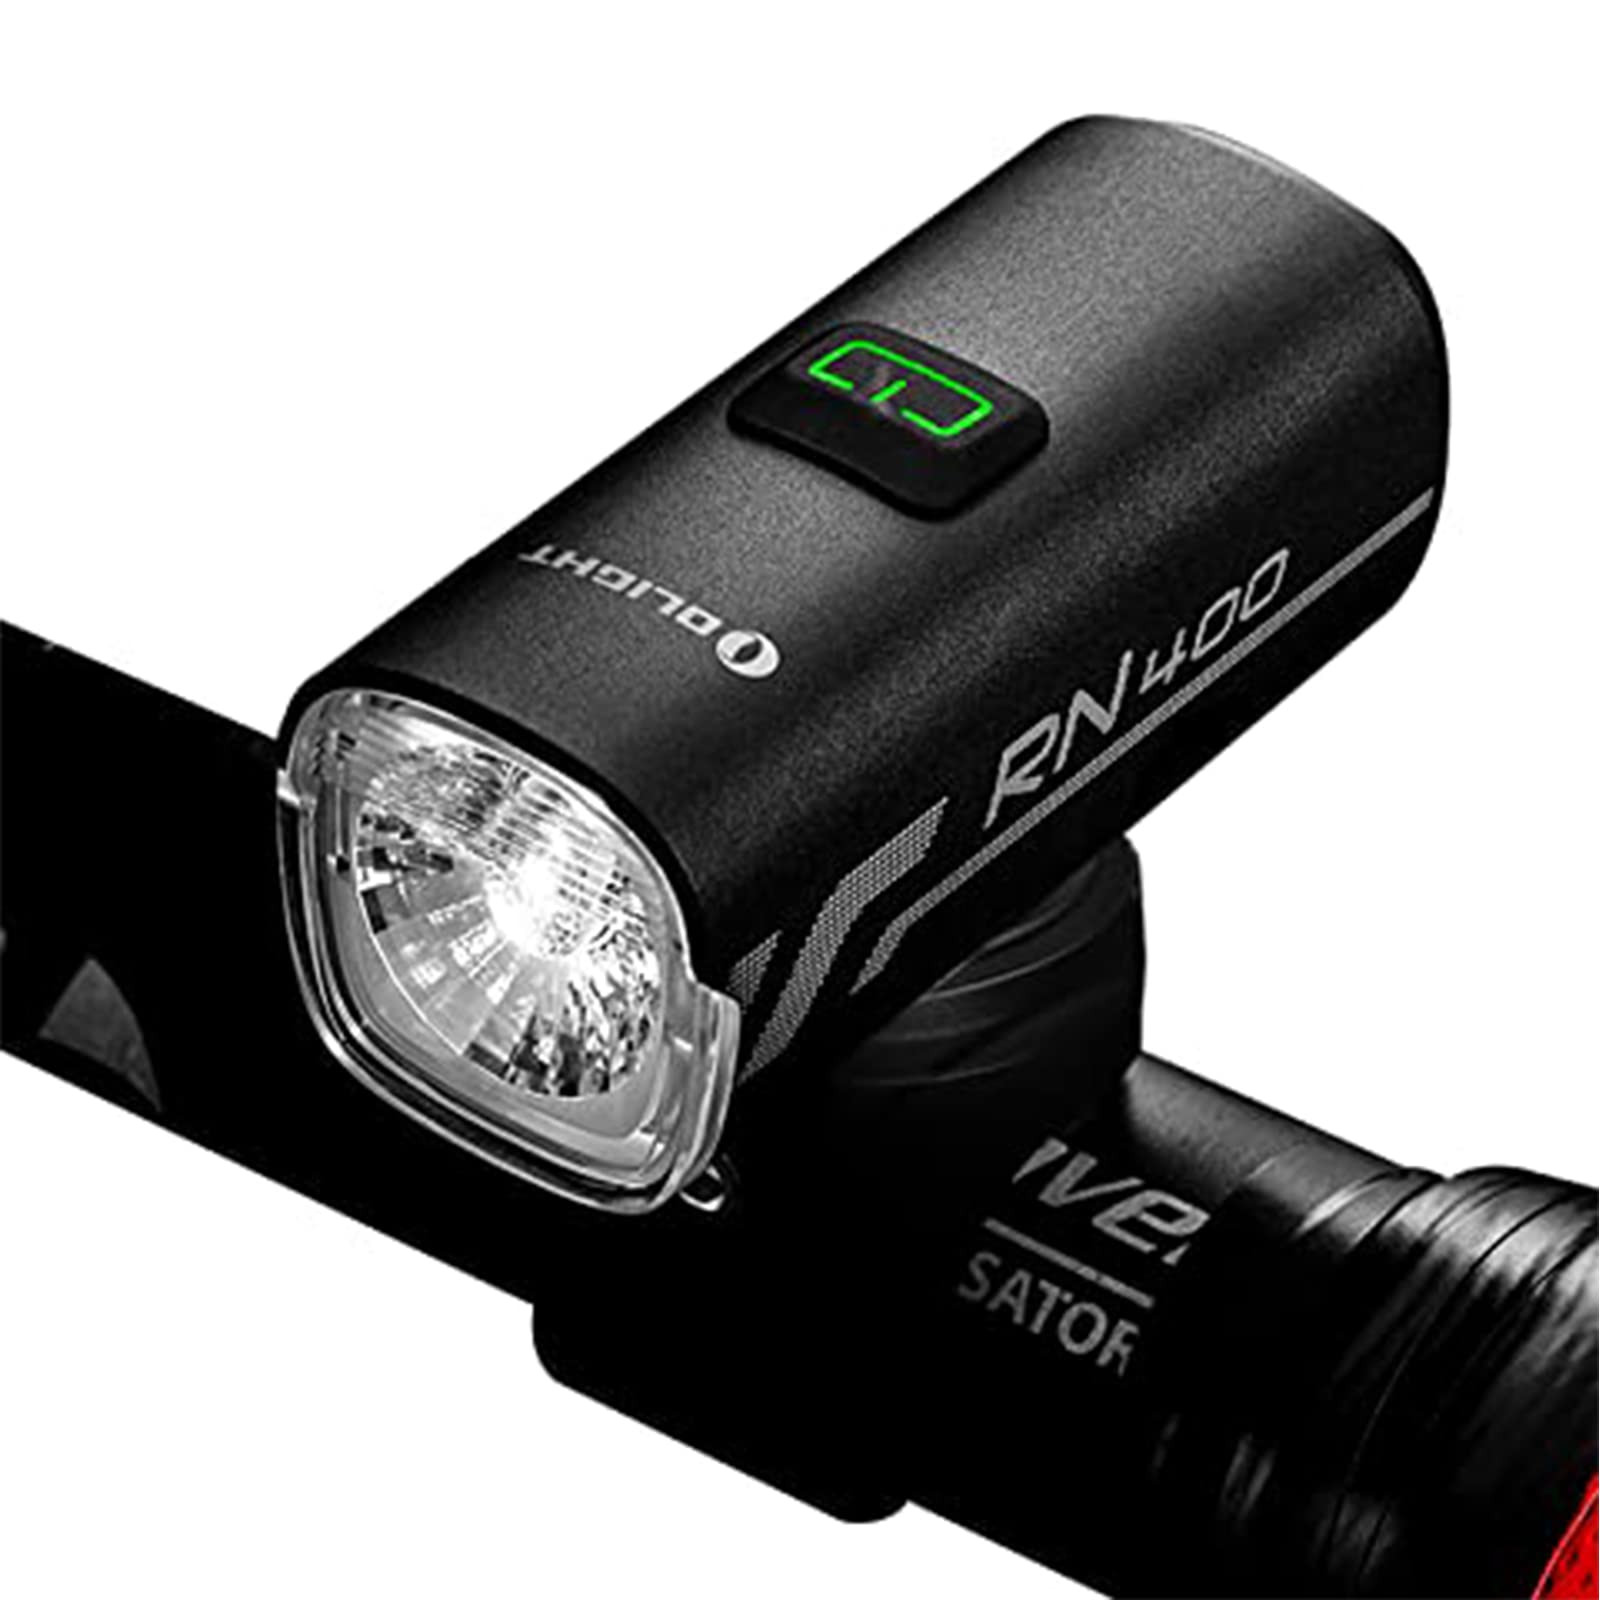 自転車 ロードバイクライト ヘッドライト 400ルーメン フロント USB充電式 長時間持つ IPX7防水 通勤 通学 サイクル用 防災 夜間走行 5秒程長押しロック解除